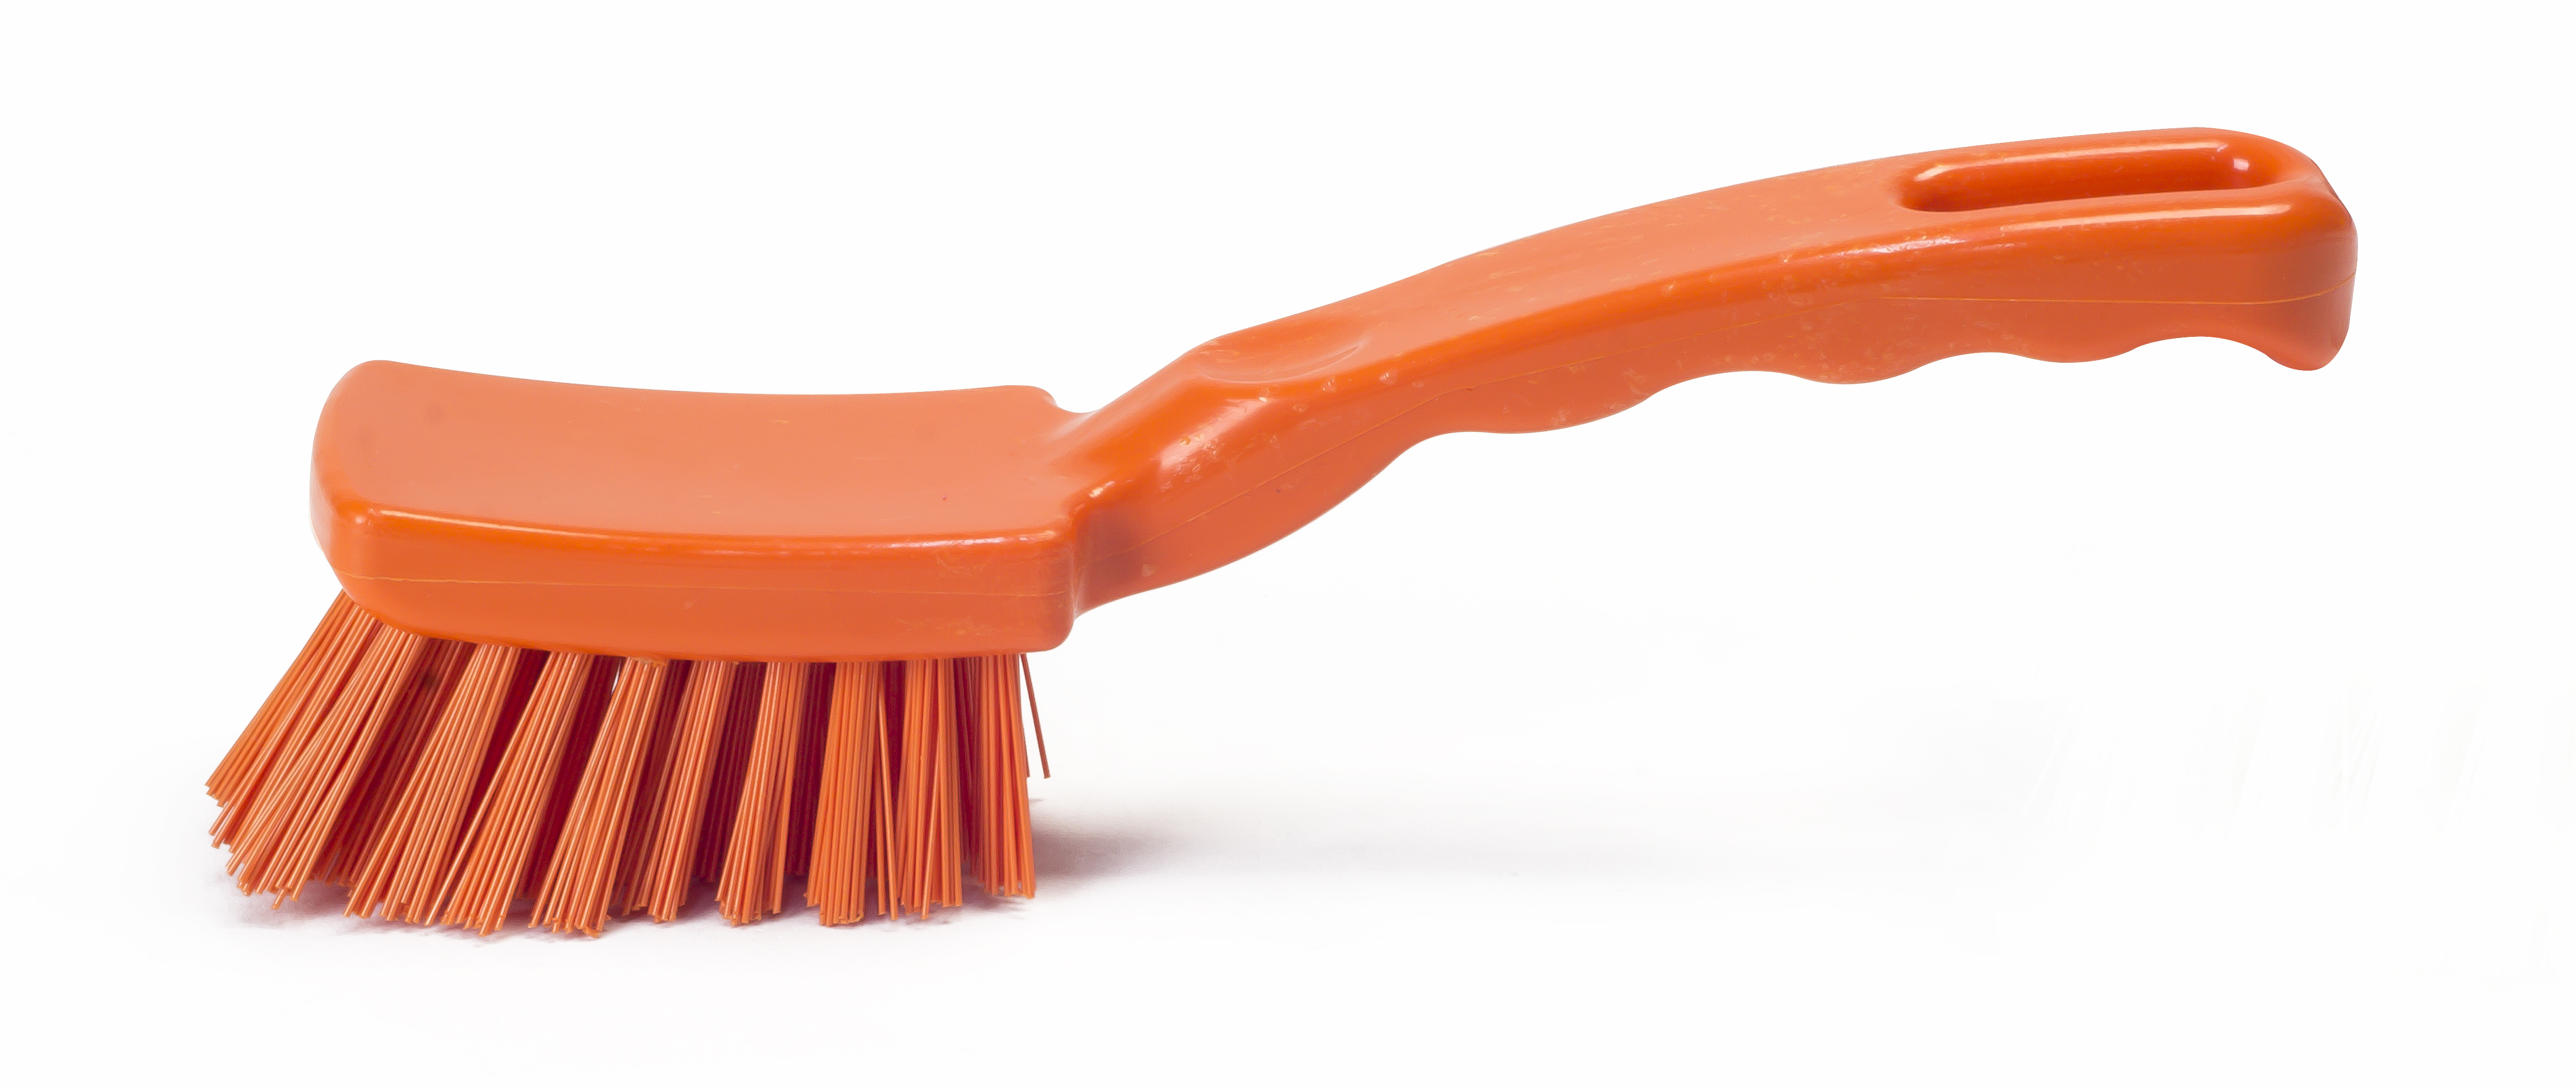 Щетка HACCPER с короткой ручкой для мытья посуды, жесткая, 177 мм, оранжевая